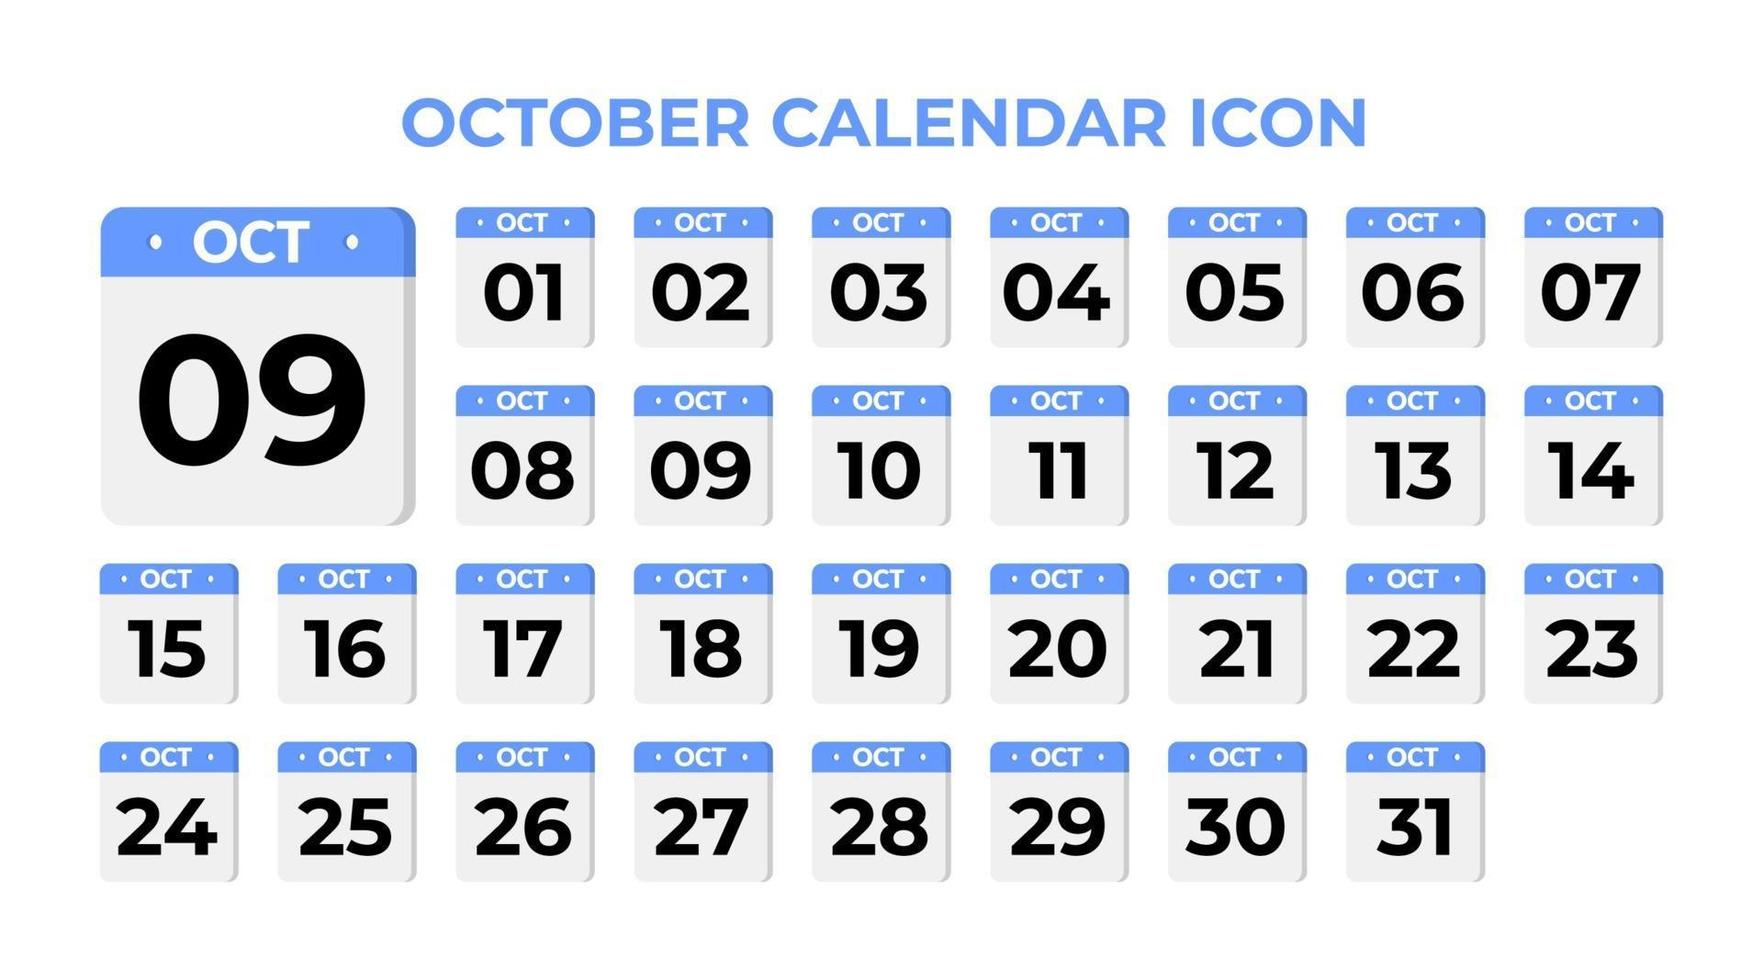 October calendar icon, set on blue vector